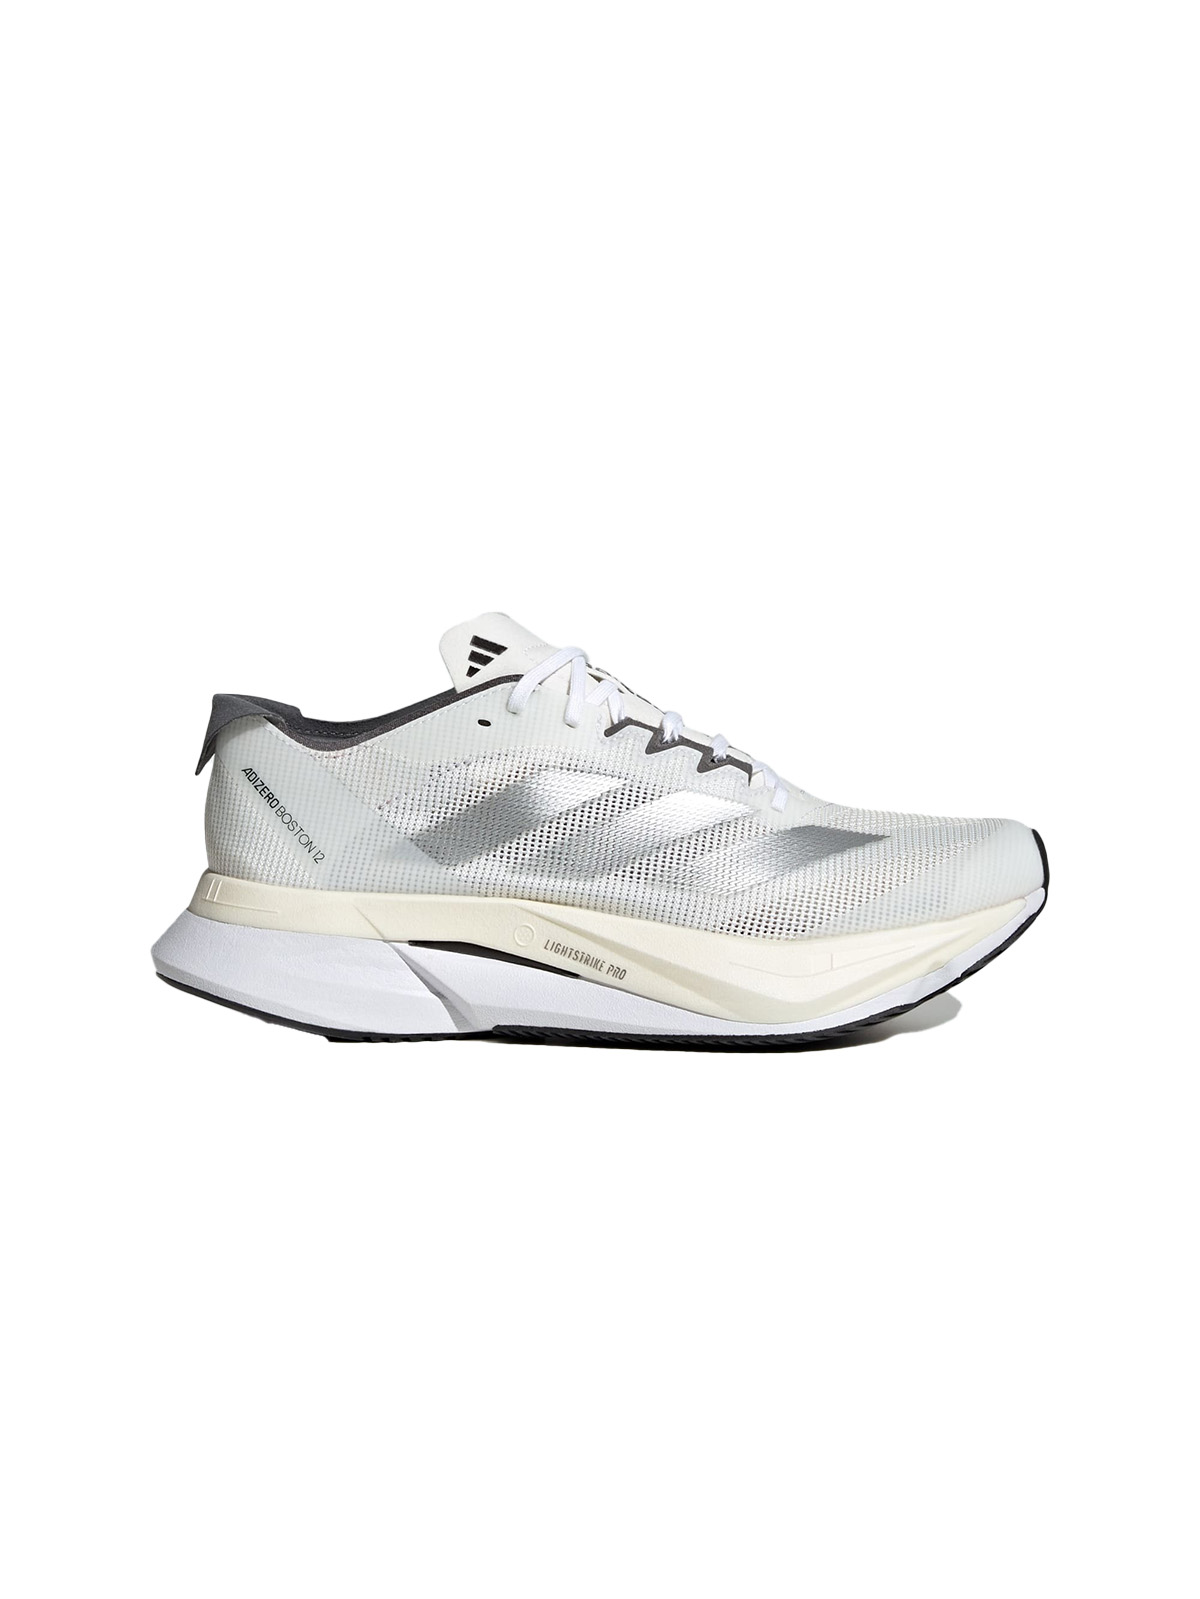 adidas, Adizero Boston 12 Running Shoes